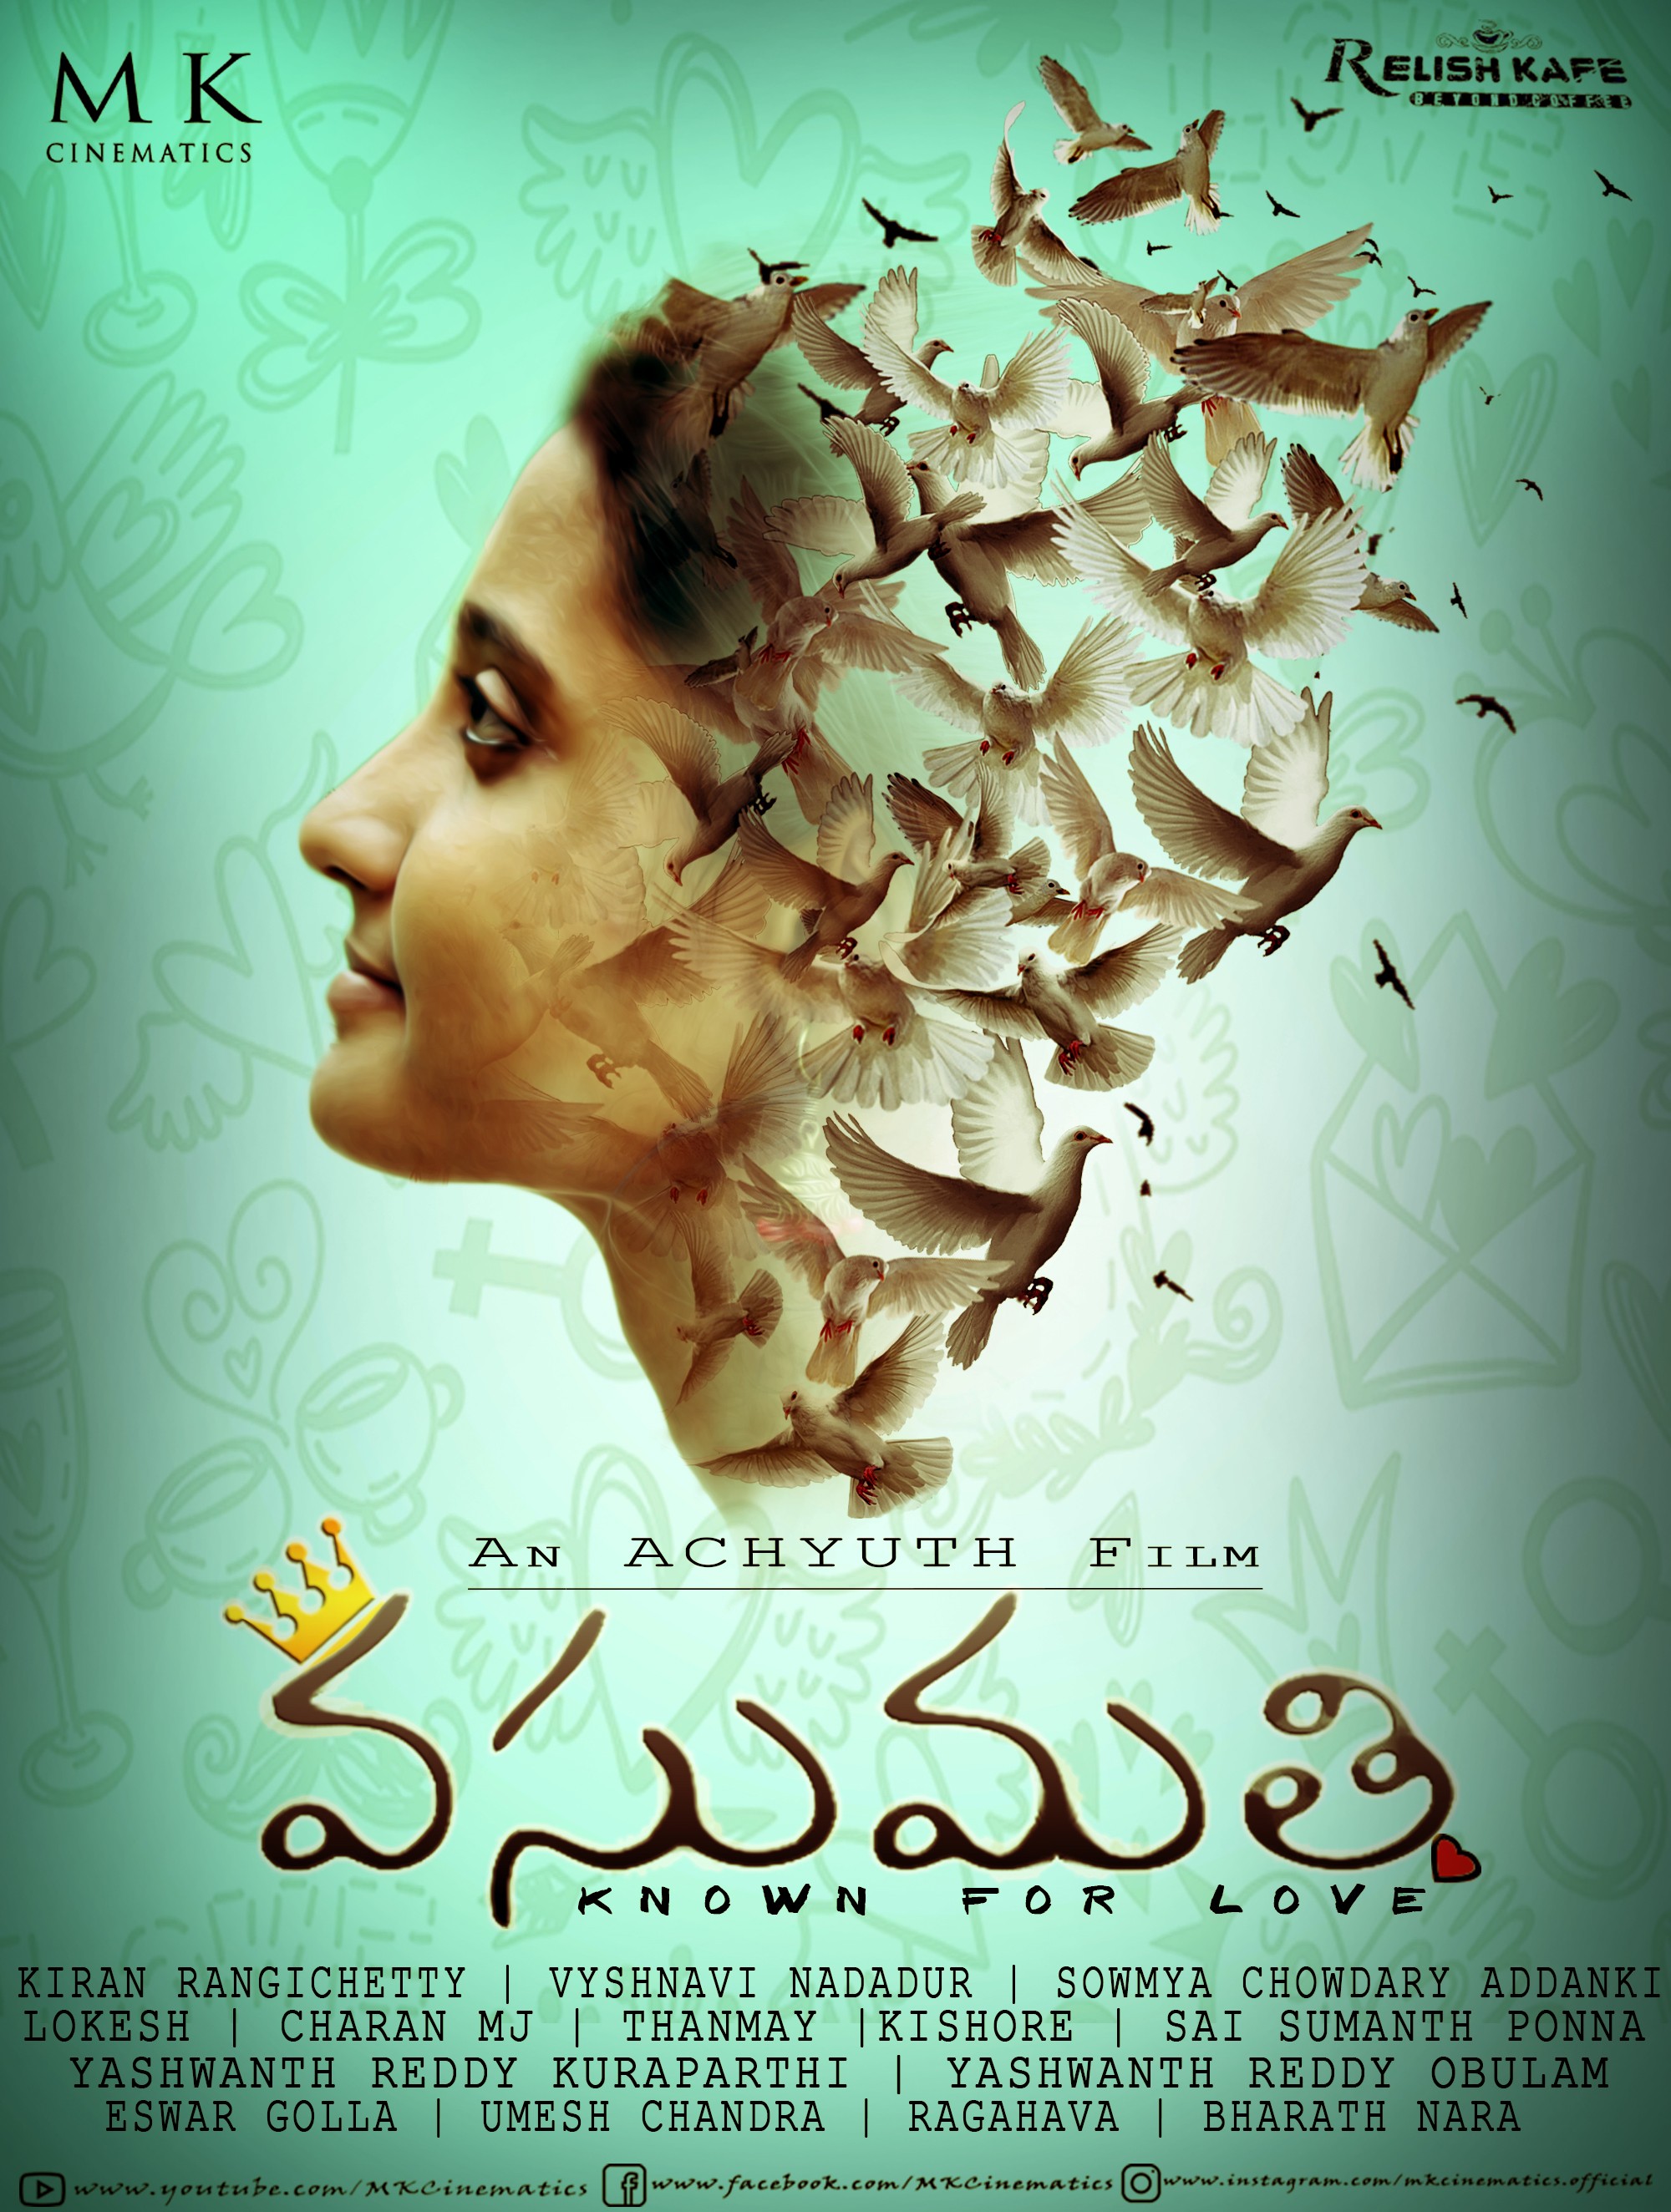 Mega Sized Movie Poster Image for Vasumathi